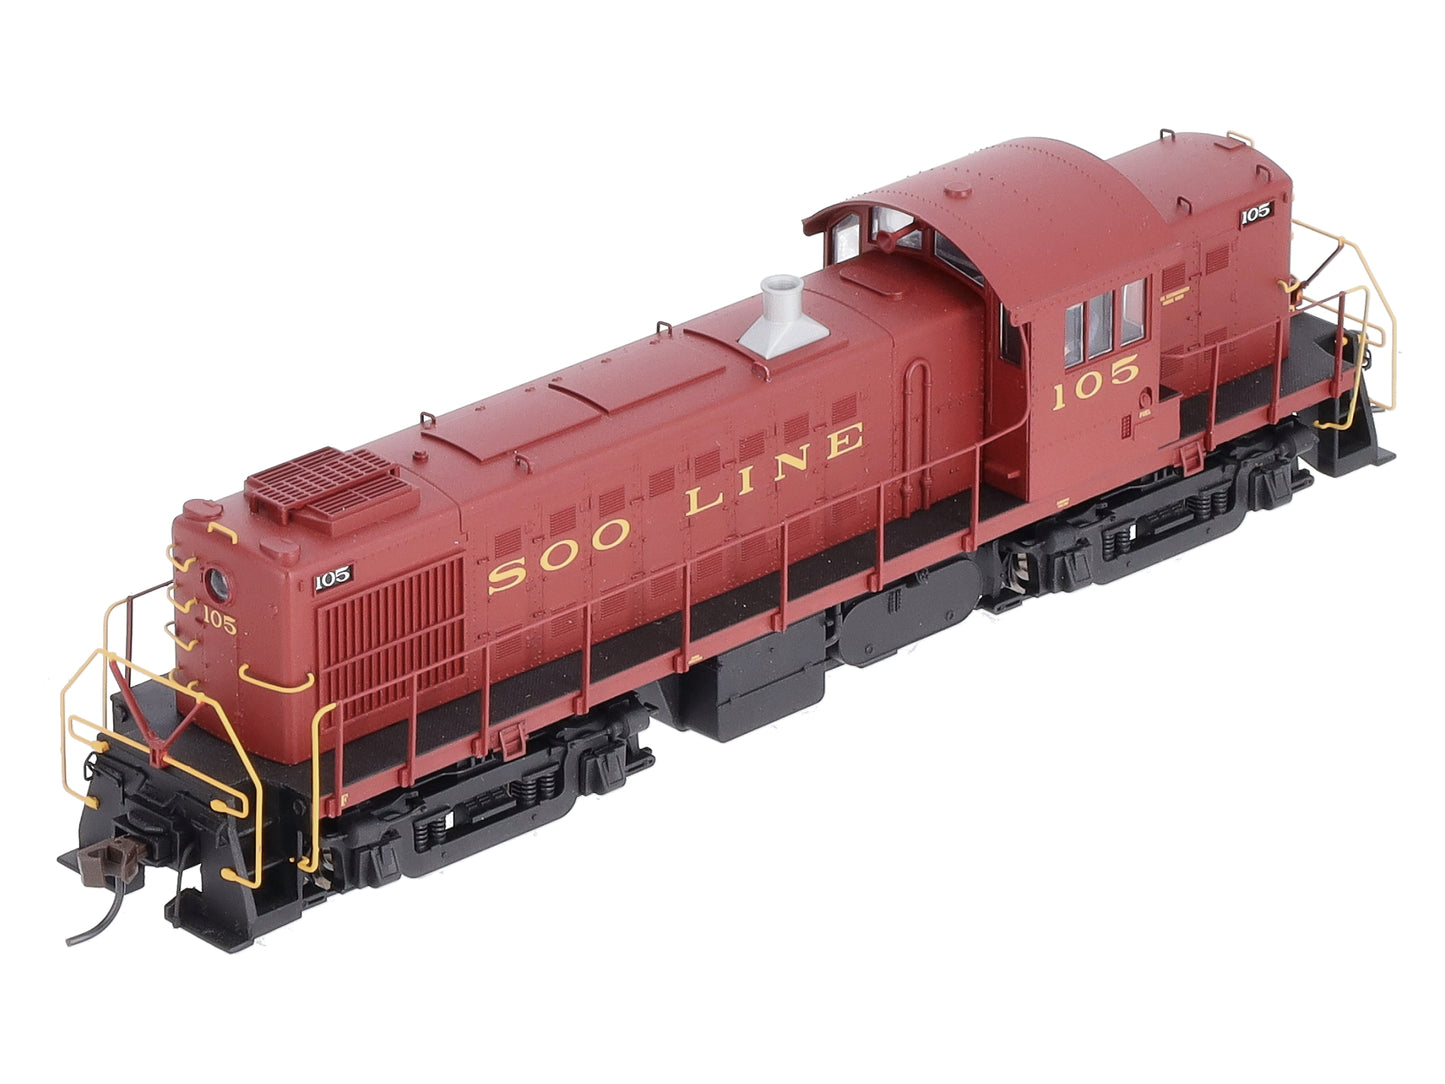 Atlas 10001442 HO Soo Line RS-1 Diesel Locomotive #105